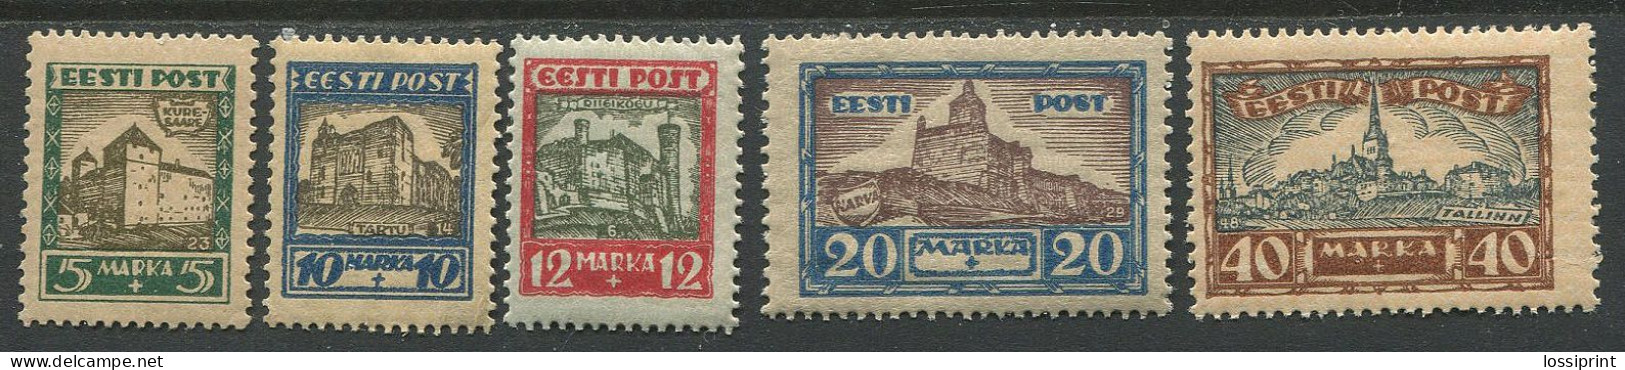 Estonia:Unused Stamps Serie Castles, Tallinn, Narva, Kuressaare, Tartu, Clue Horizontal Lines, 1927, MNH - Estland